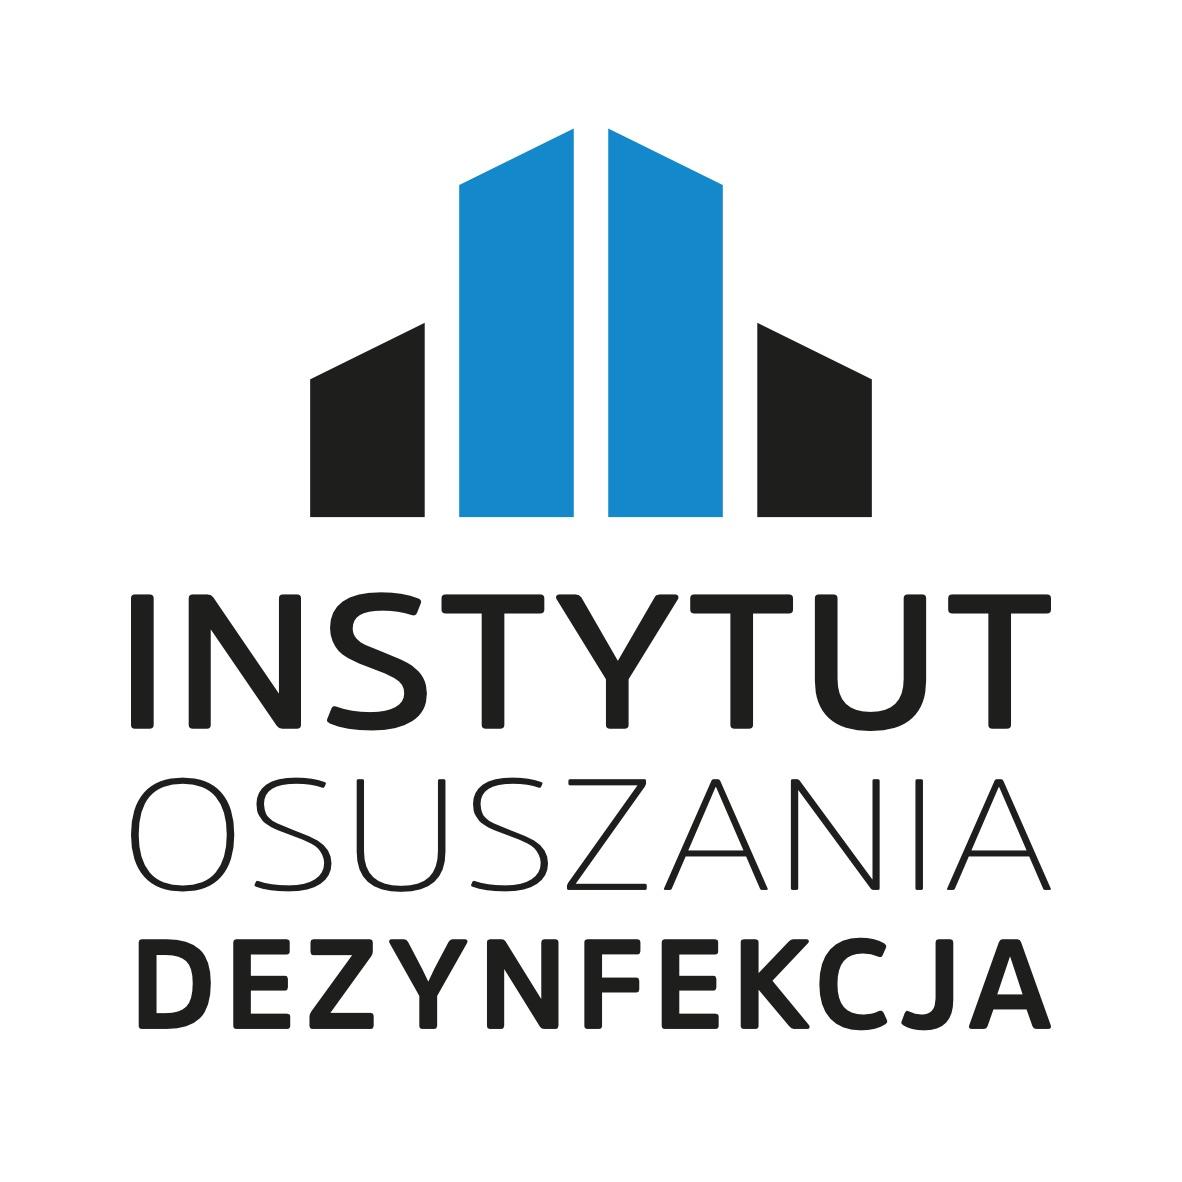 Przemysłowe ozonowanie powietrza Instytut Osuszania Katowice , śląskie